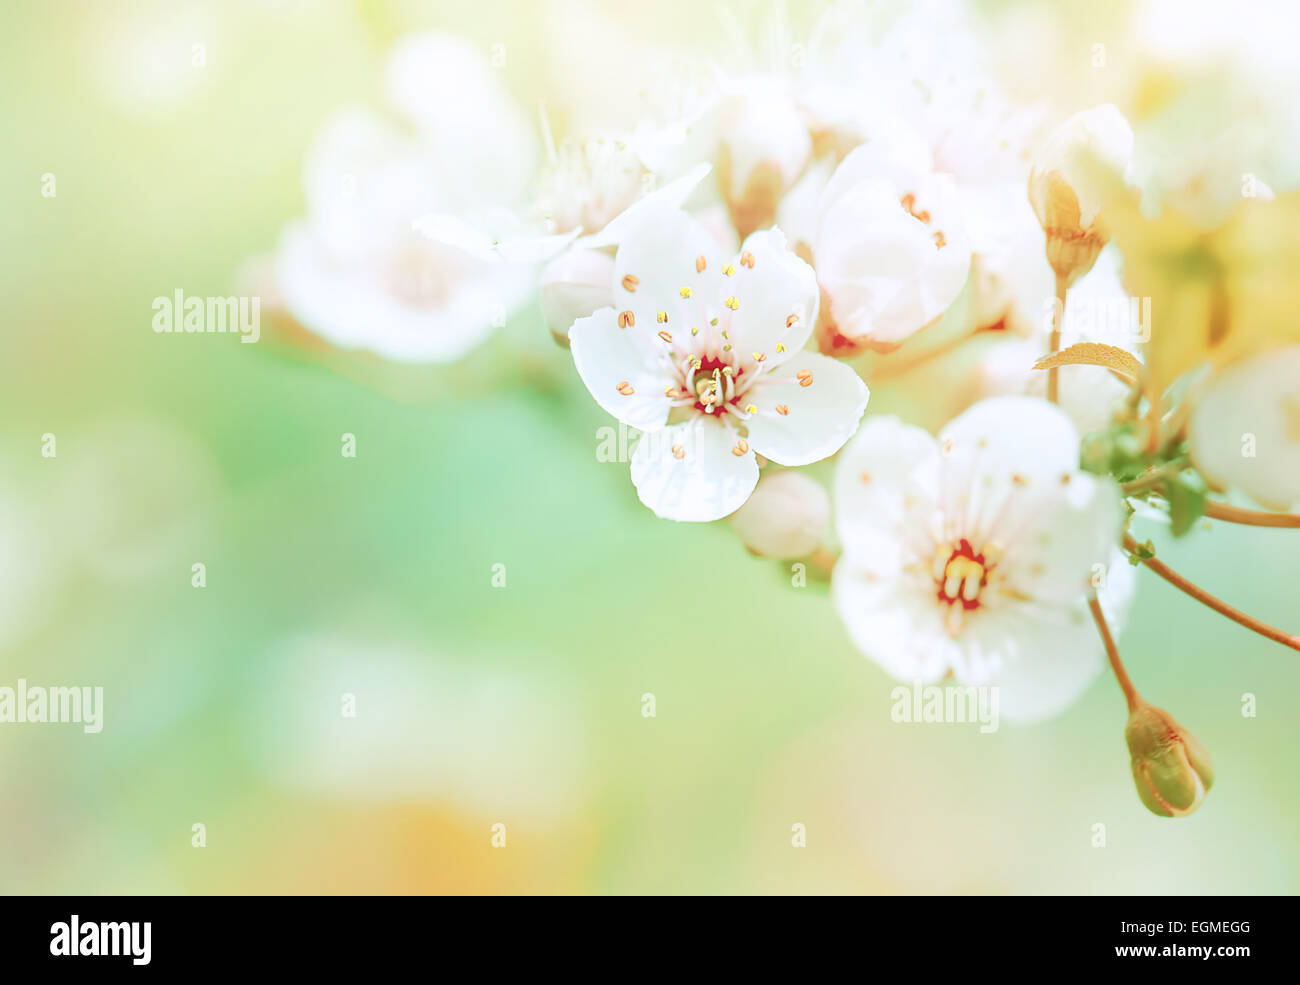 Schöne blühende, sanfte weiße frische Kirschbaum Frühlingsblumen Grenzen an grünen Weichzeichner Hintergrund, Frühling Zeit Konzept Stockfoto